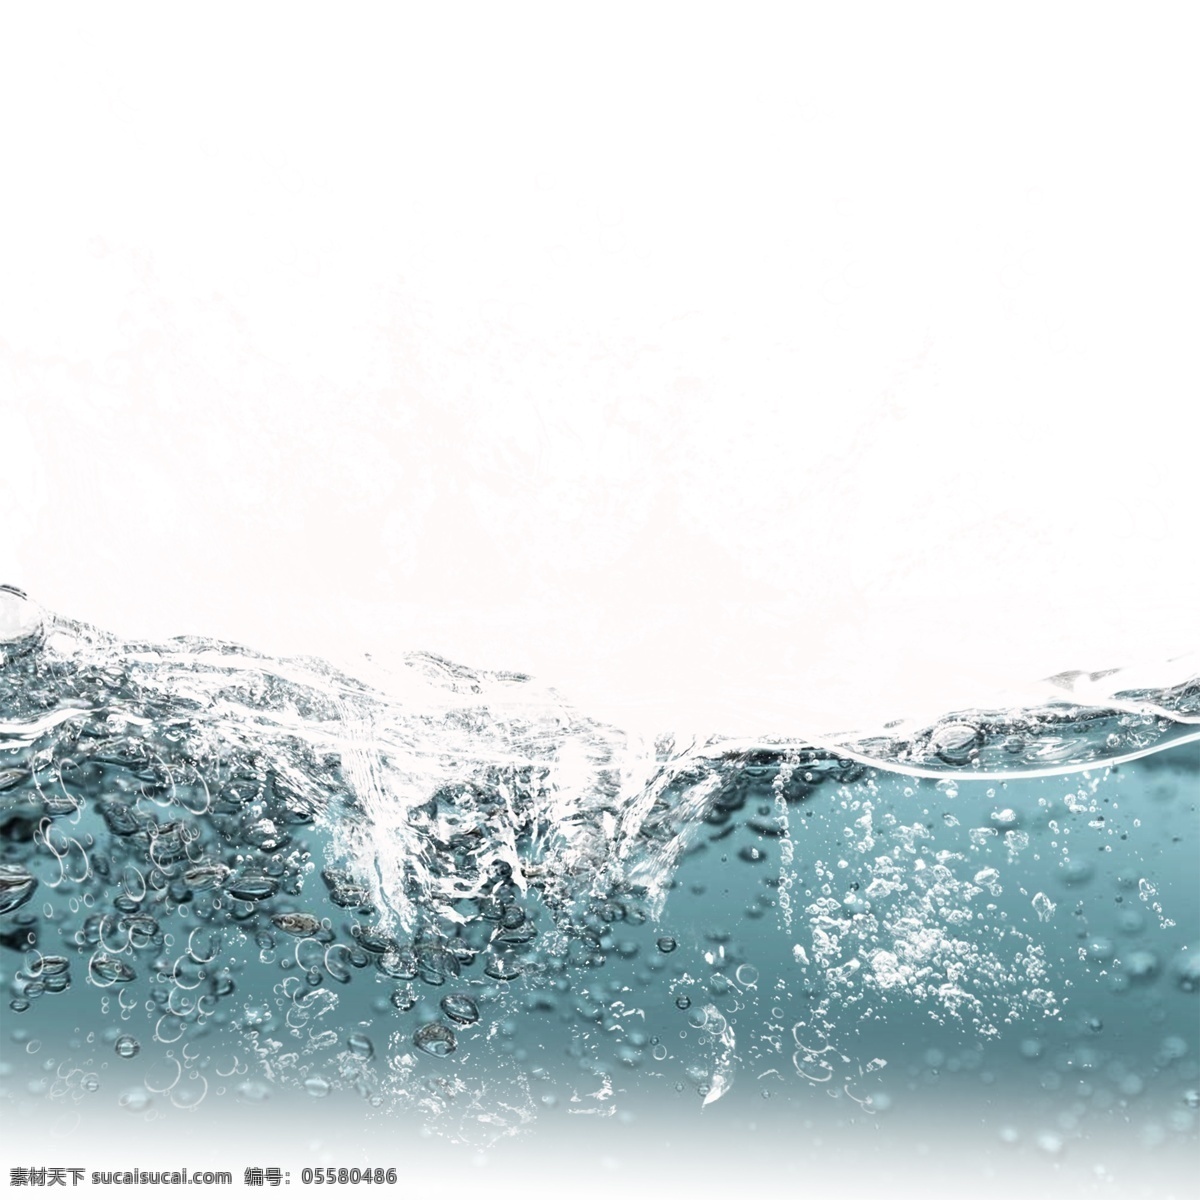 蓝色 水 波纹 水滴 元素 水花 水波纹 波浪 动感 动感水 动感水浪 动感水纹 水效果 水波 飞溅 水圈 喷溅